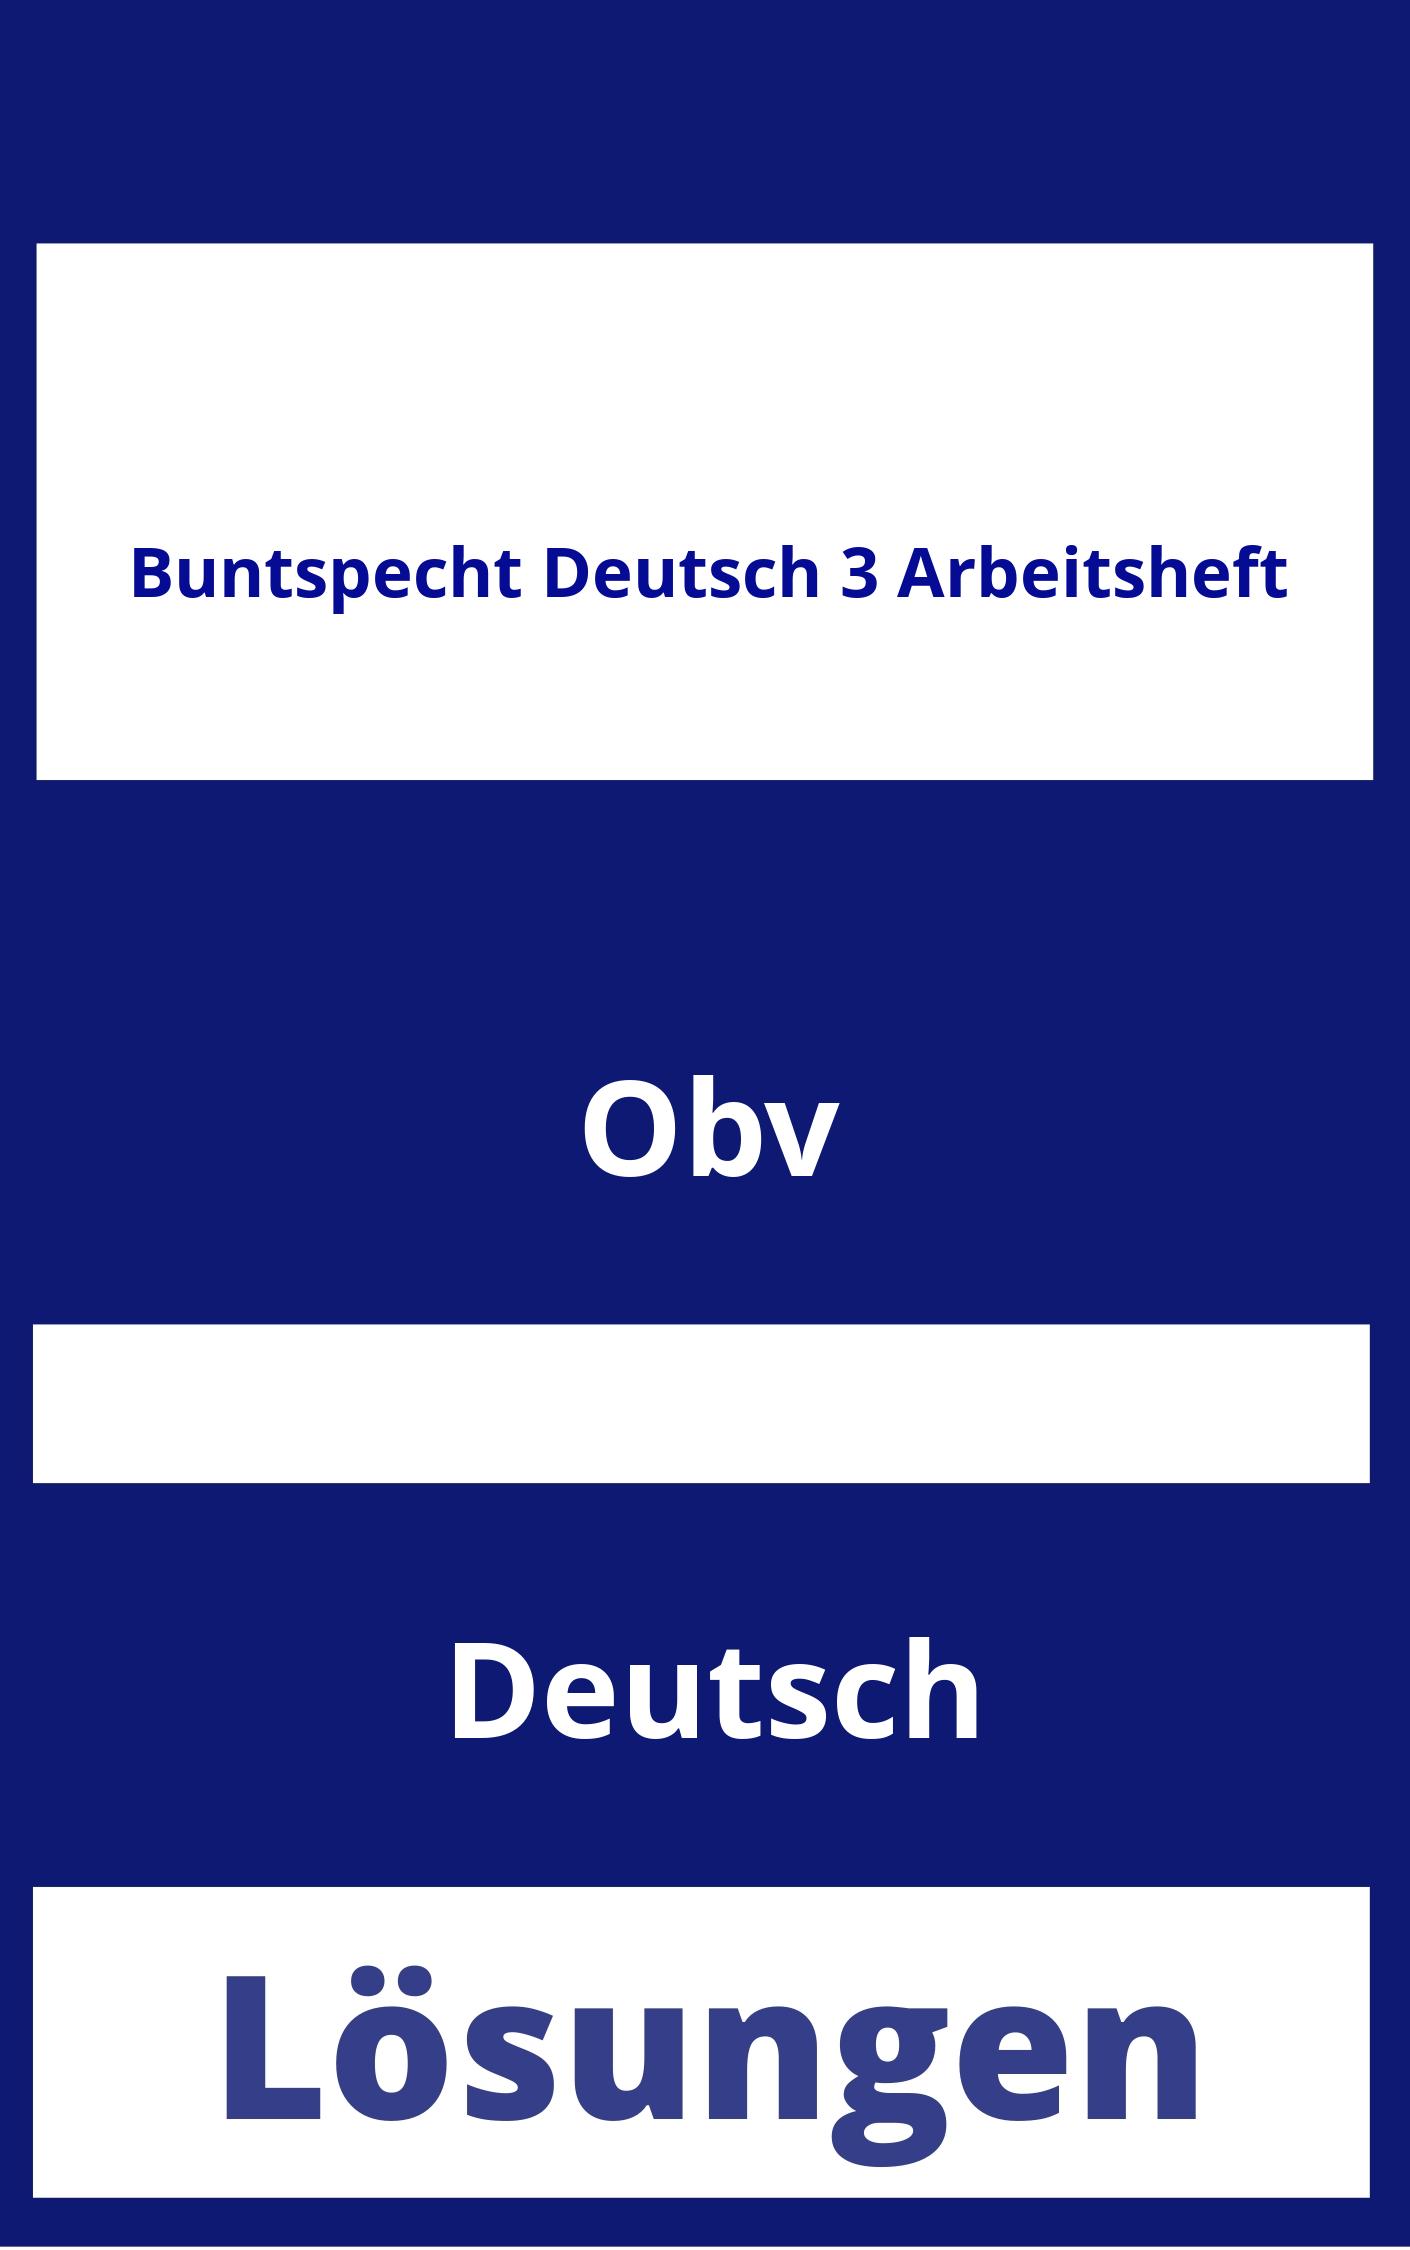 Buntspecht Deutsch 3 Arbeitsheft Lösungen PDF